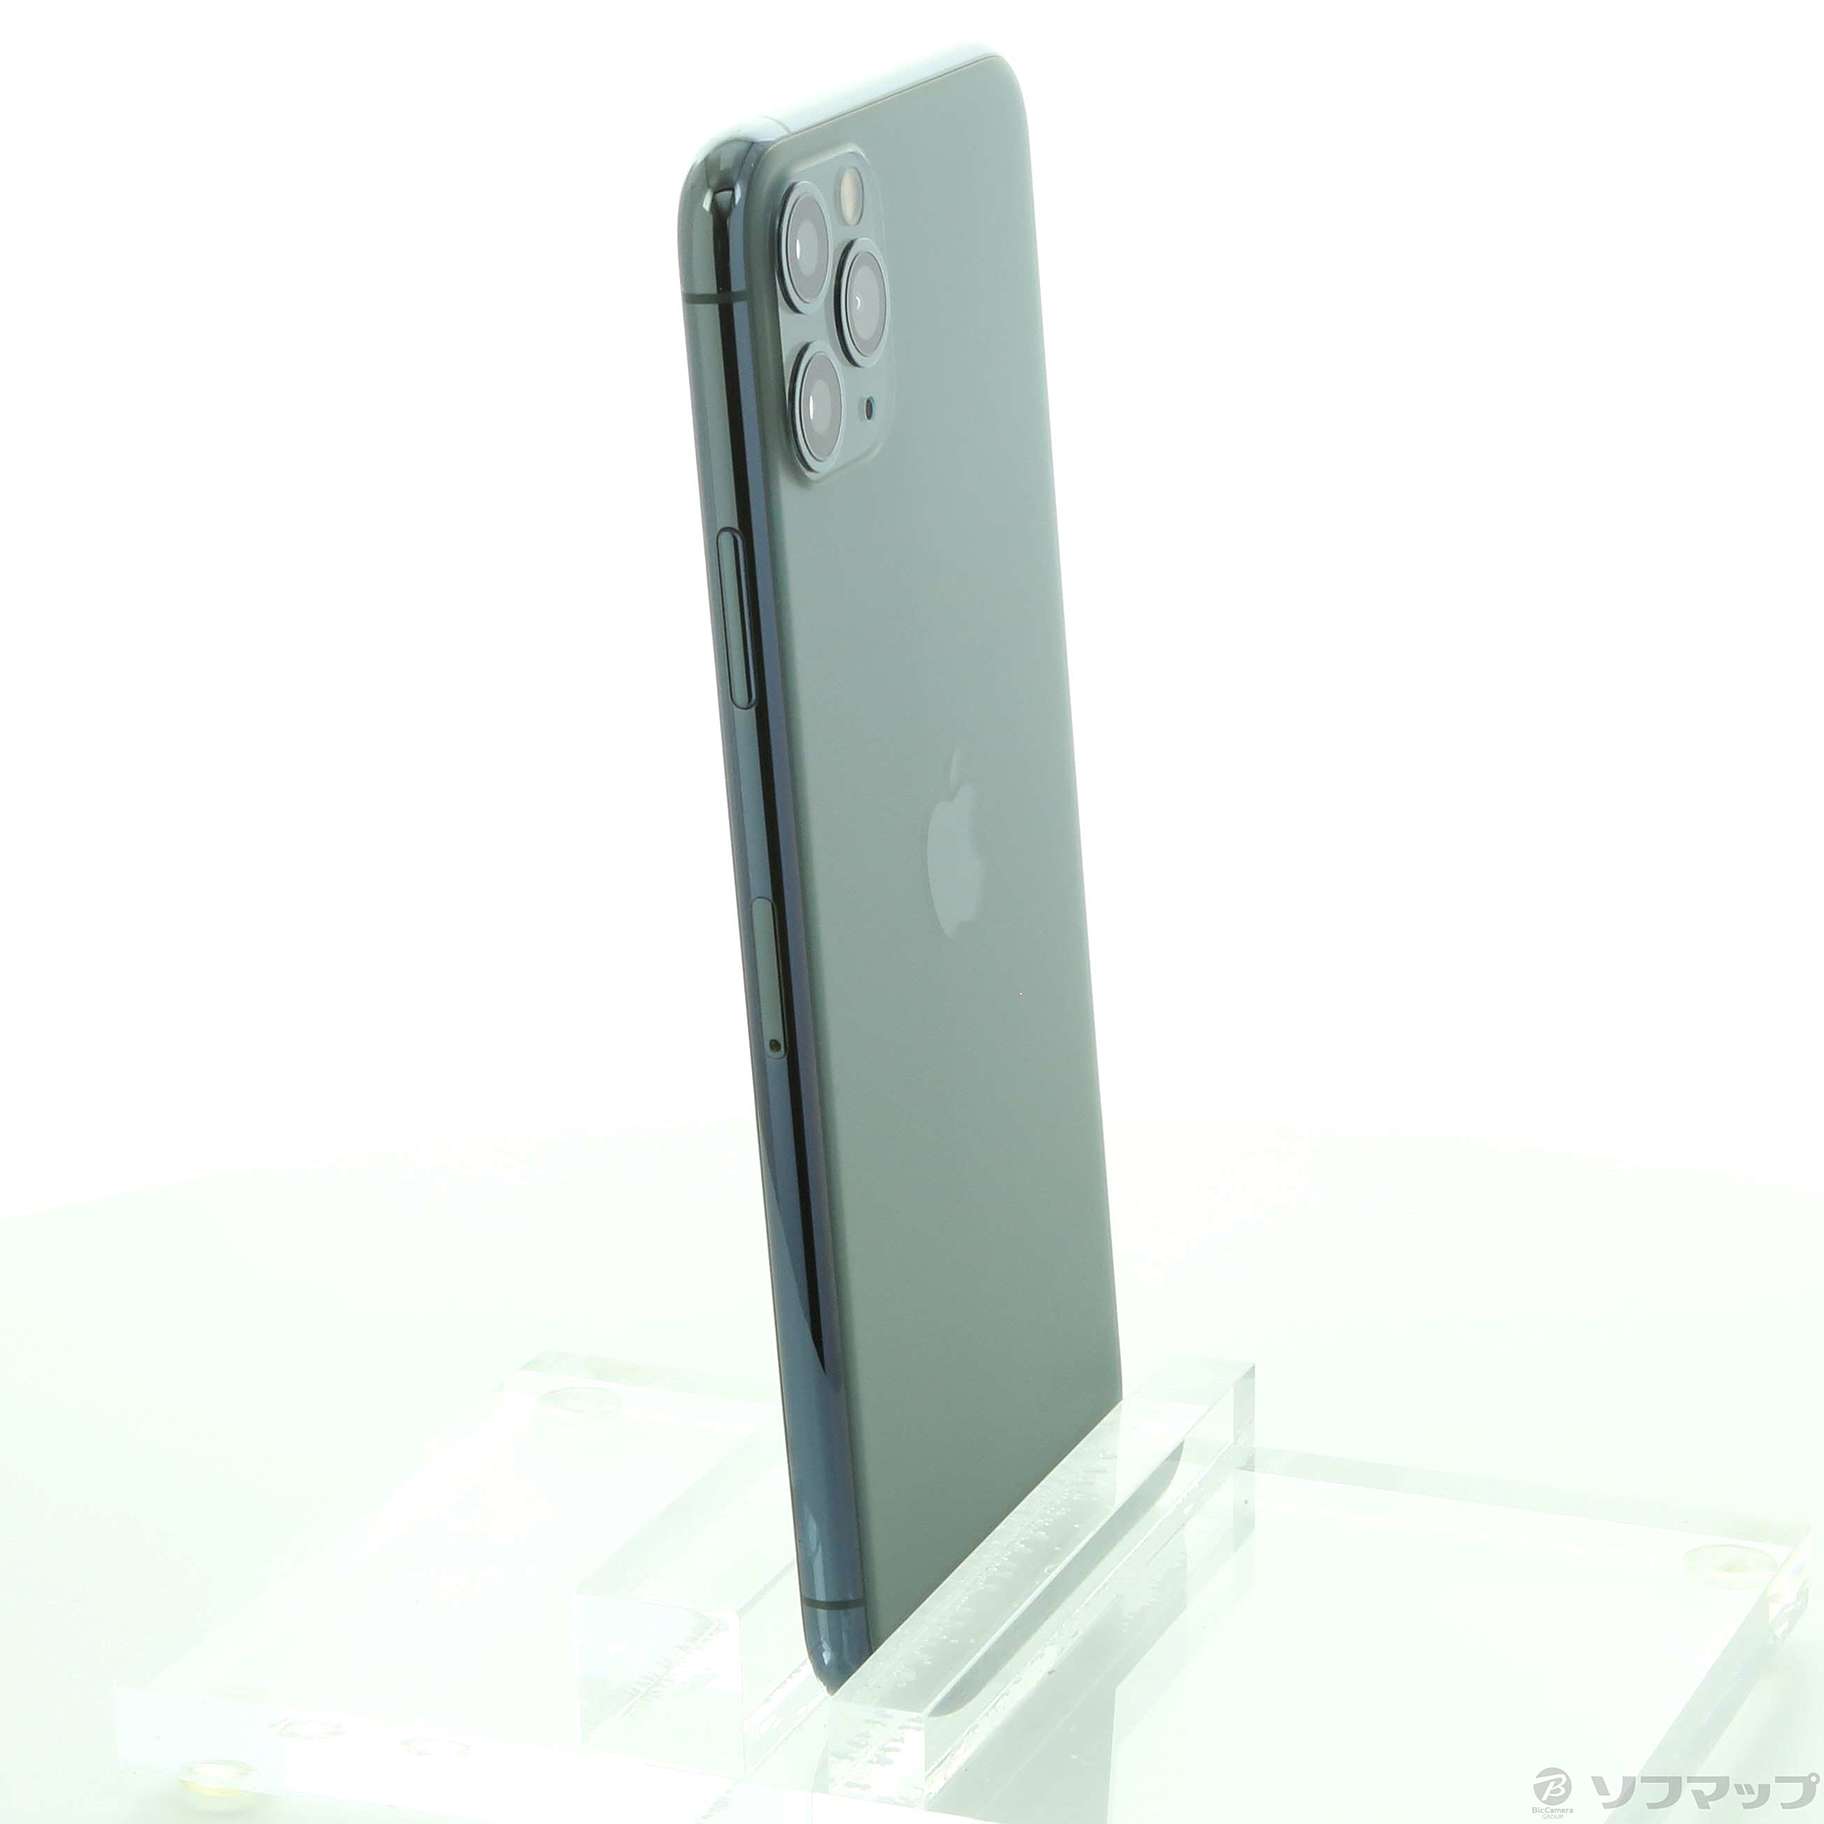 39200円 70％OFFアウトレット iPhone 11 Pro ミッドナイトグリーン 64GB 未使用品